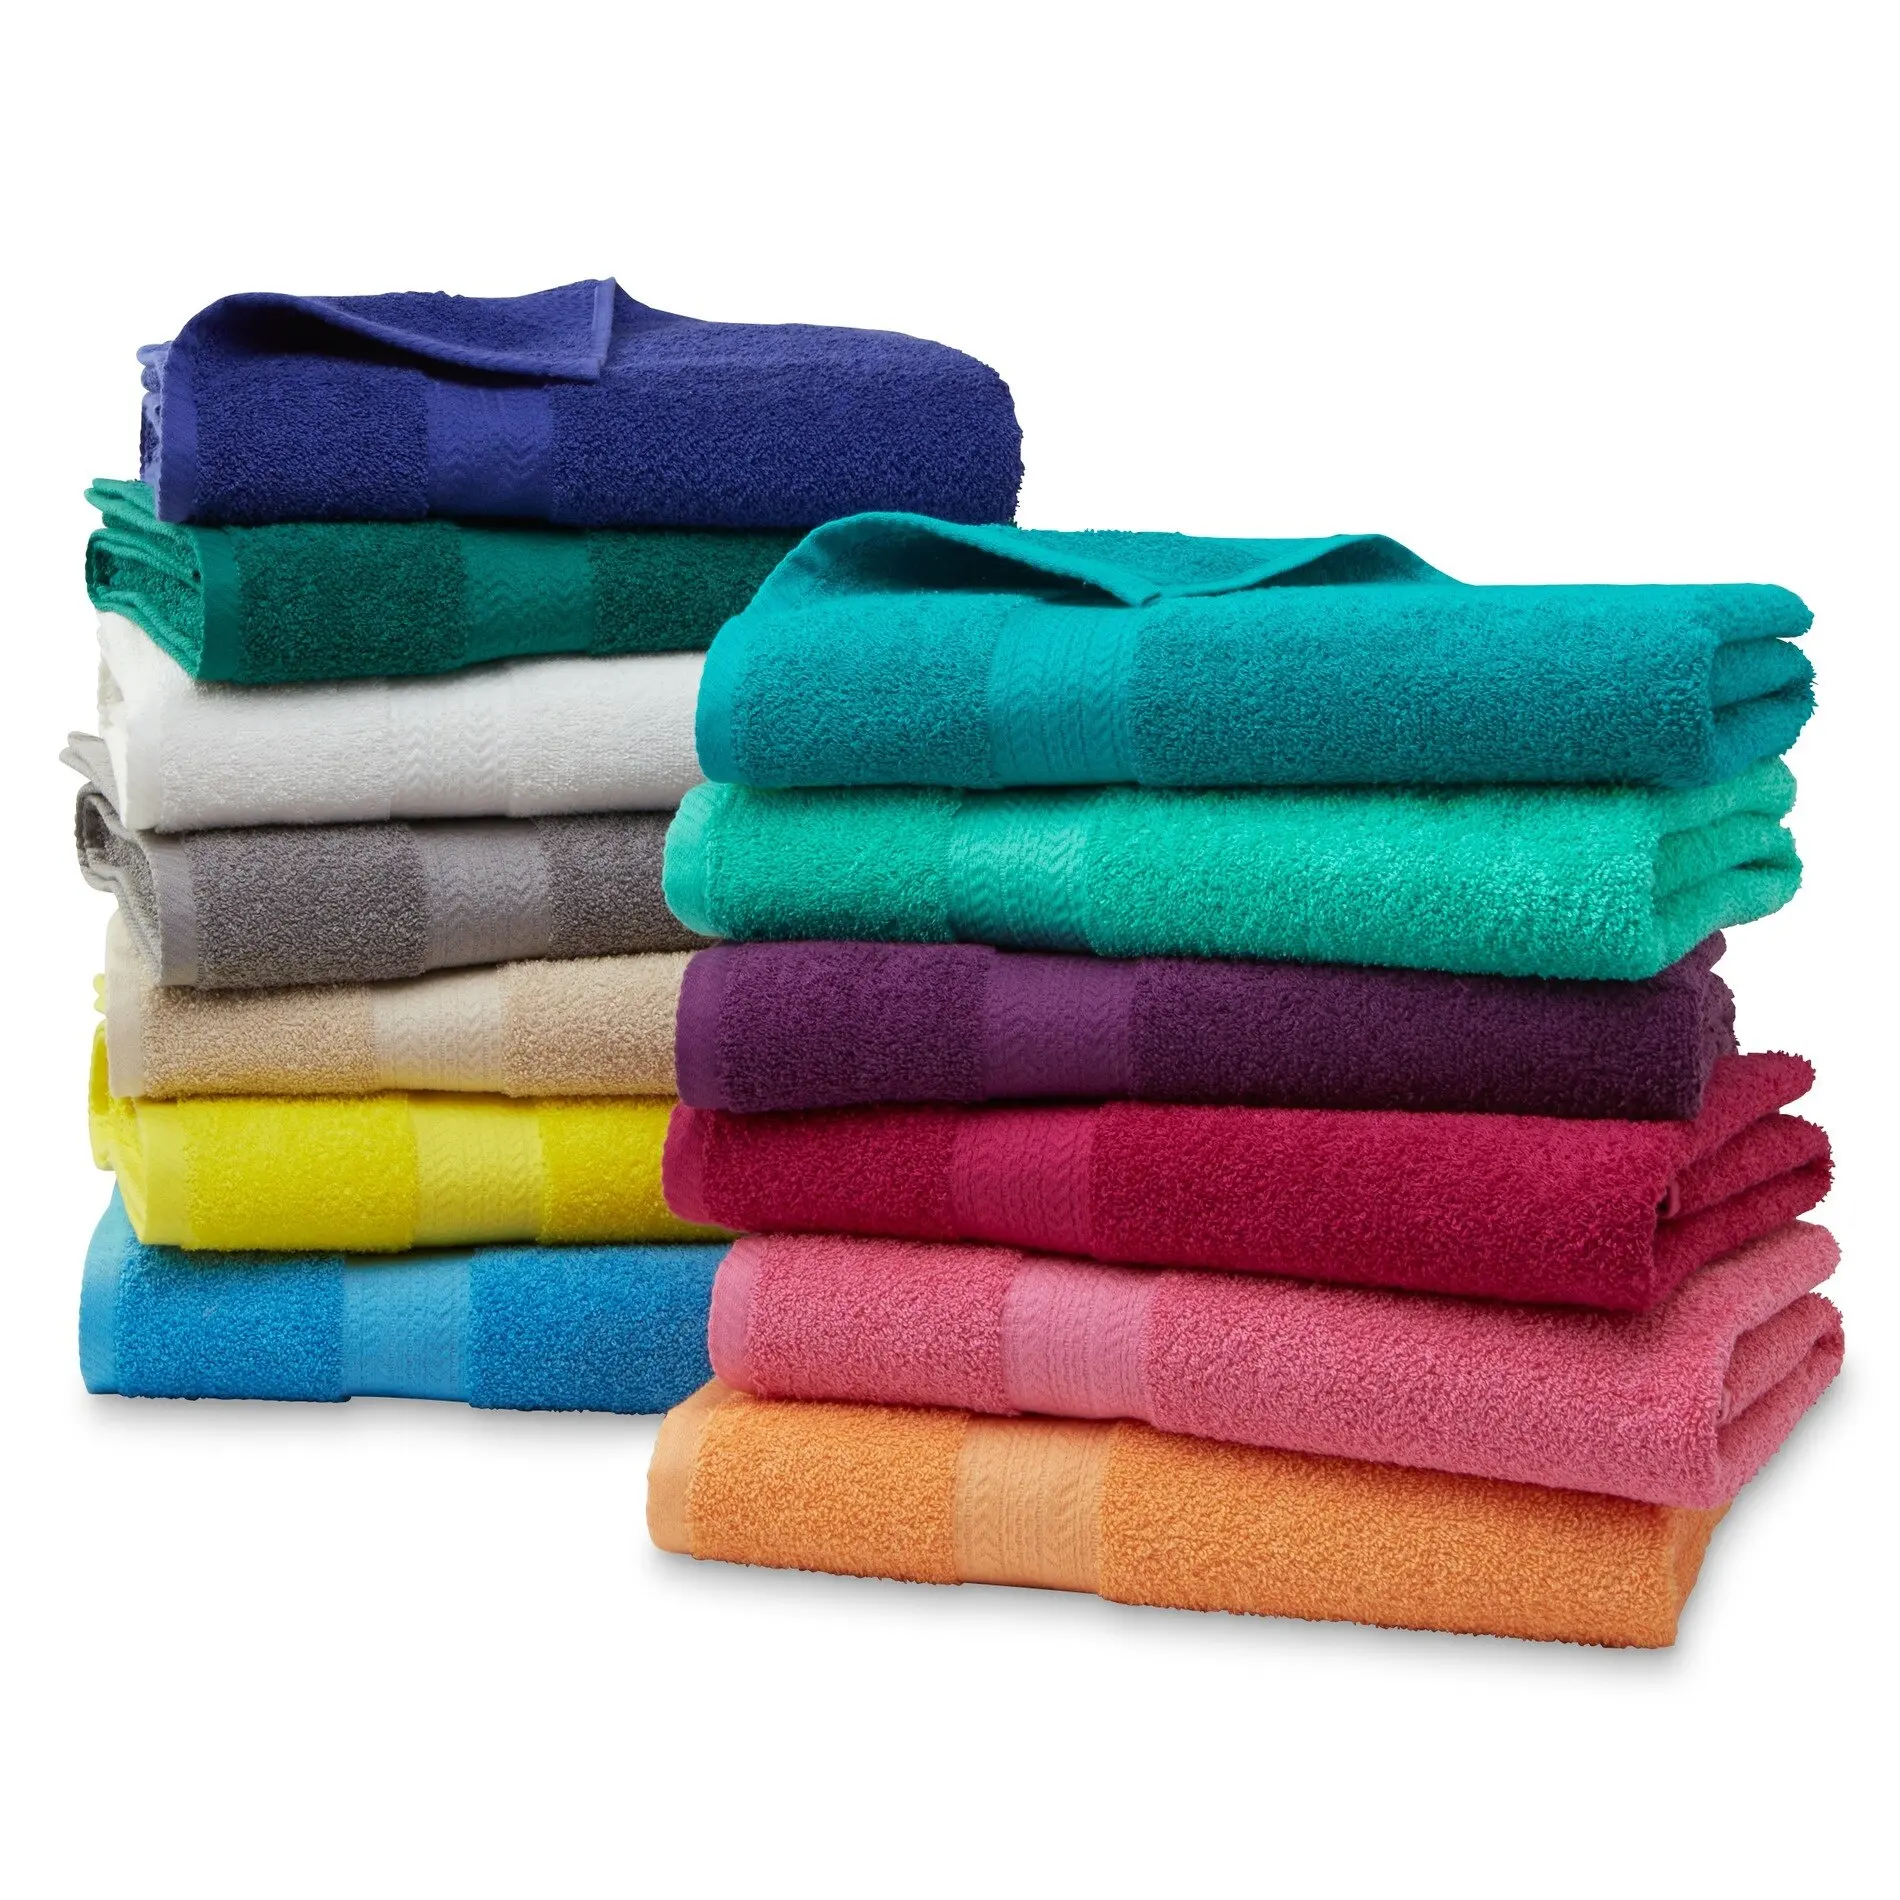 Banyo havlusu-100% pamuk mevcut tüm renk banyo havlusu